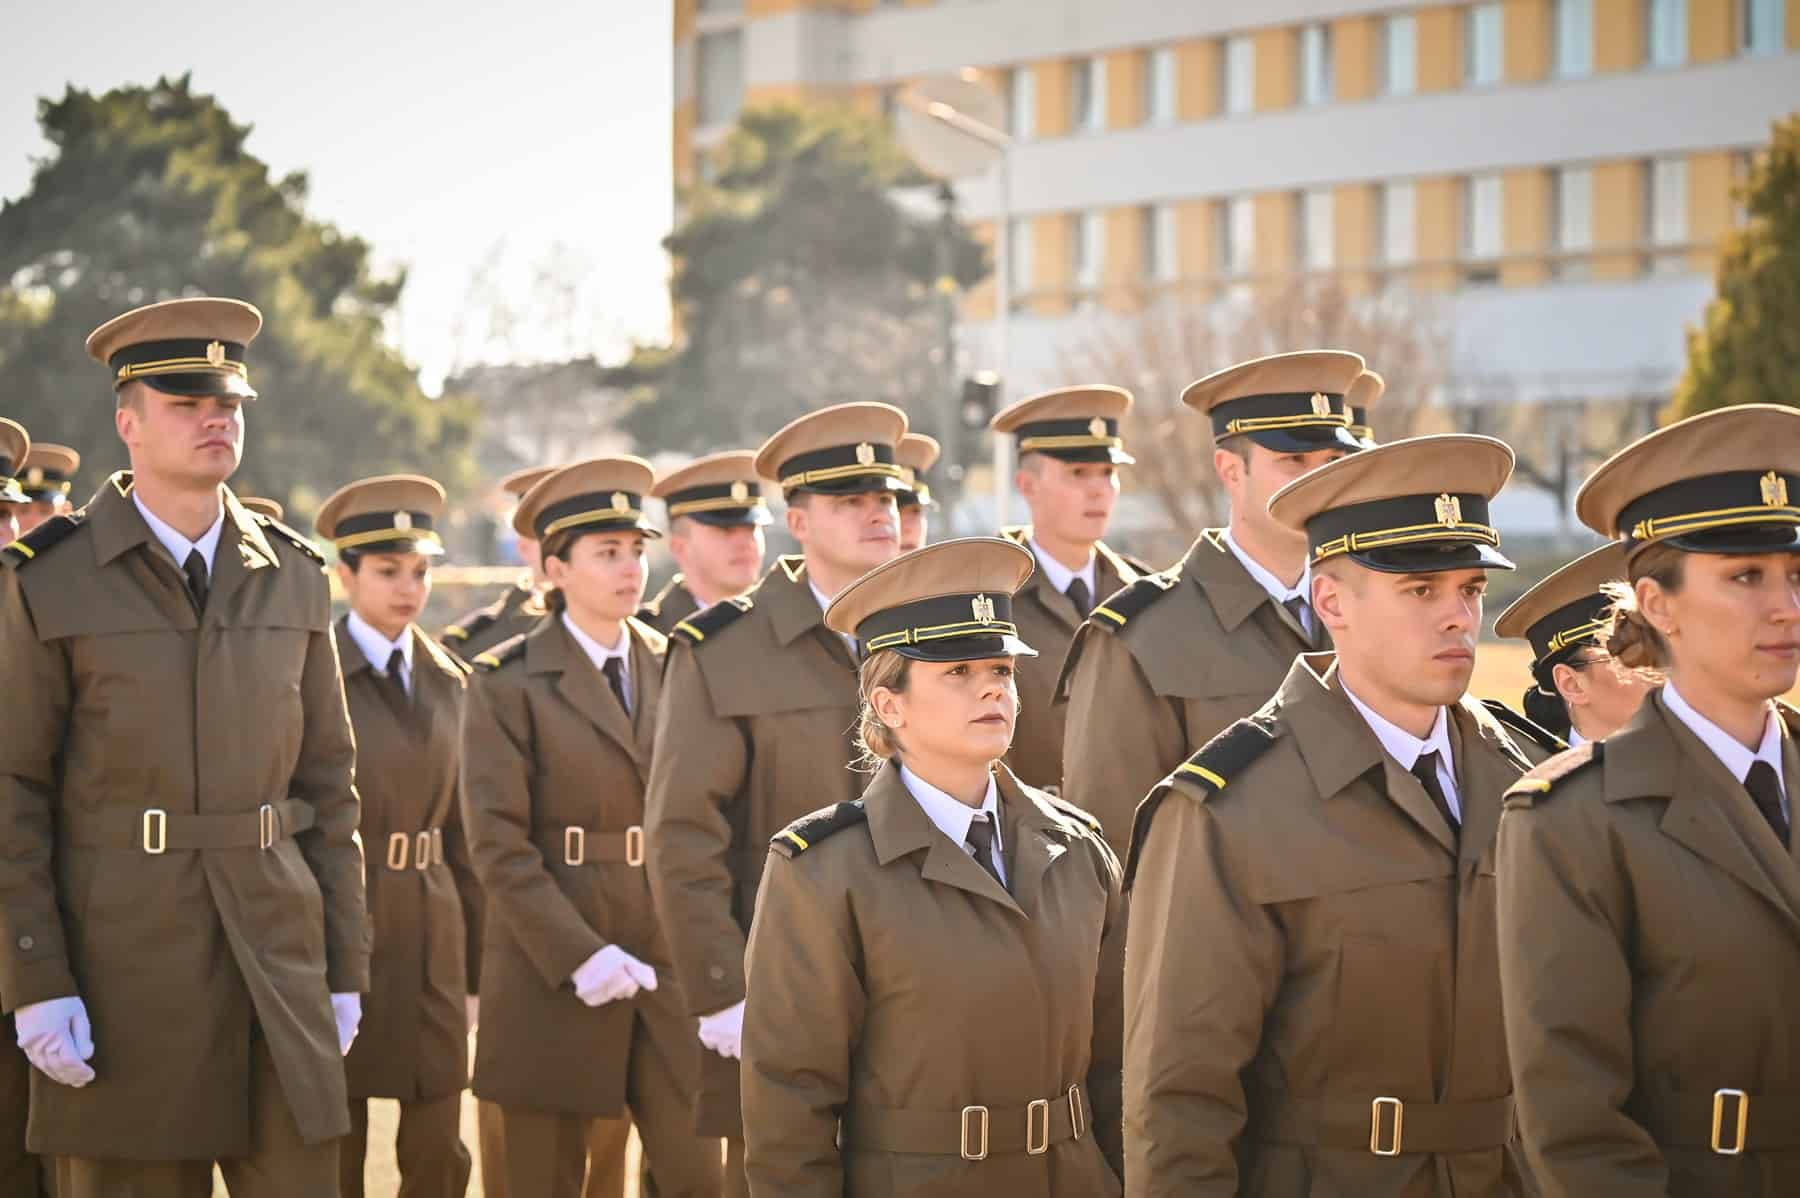 școala militară din sibiu aniversează 5 ani de excelență în educația militară. primarul astrid fodor: ”o instituție de prestigiu” (foto)